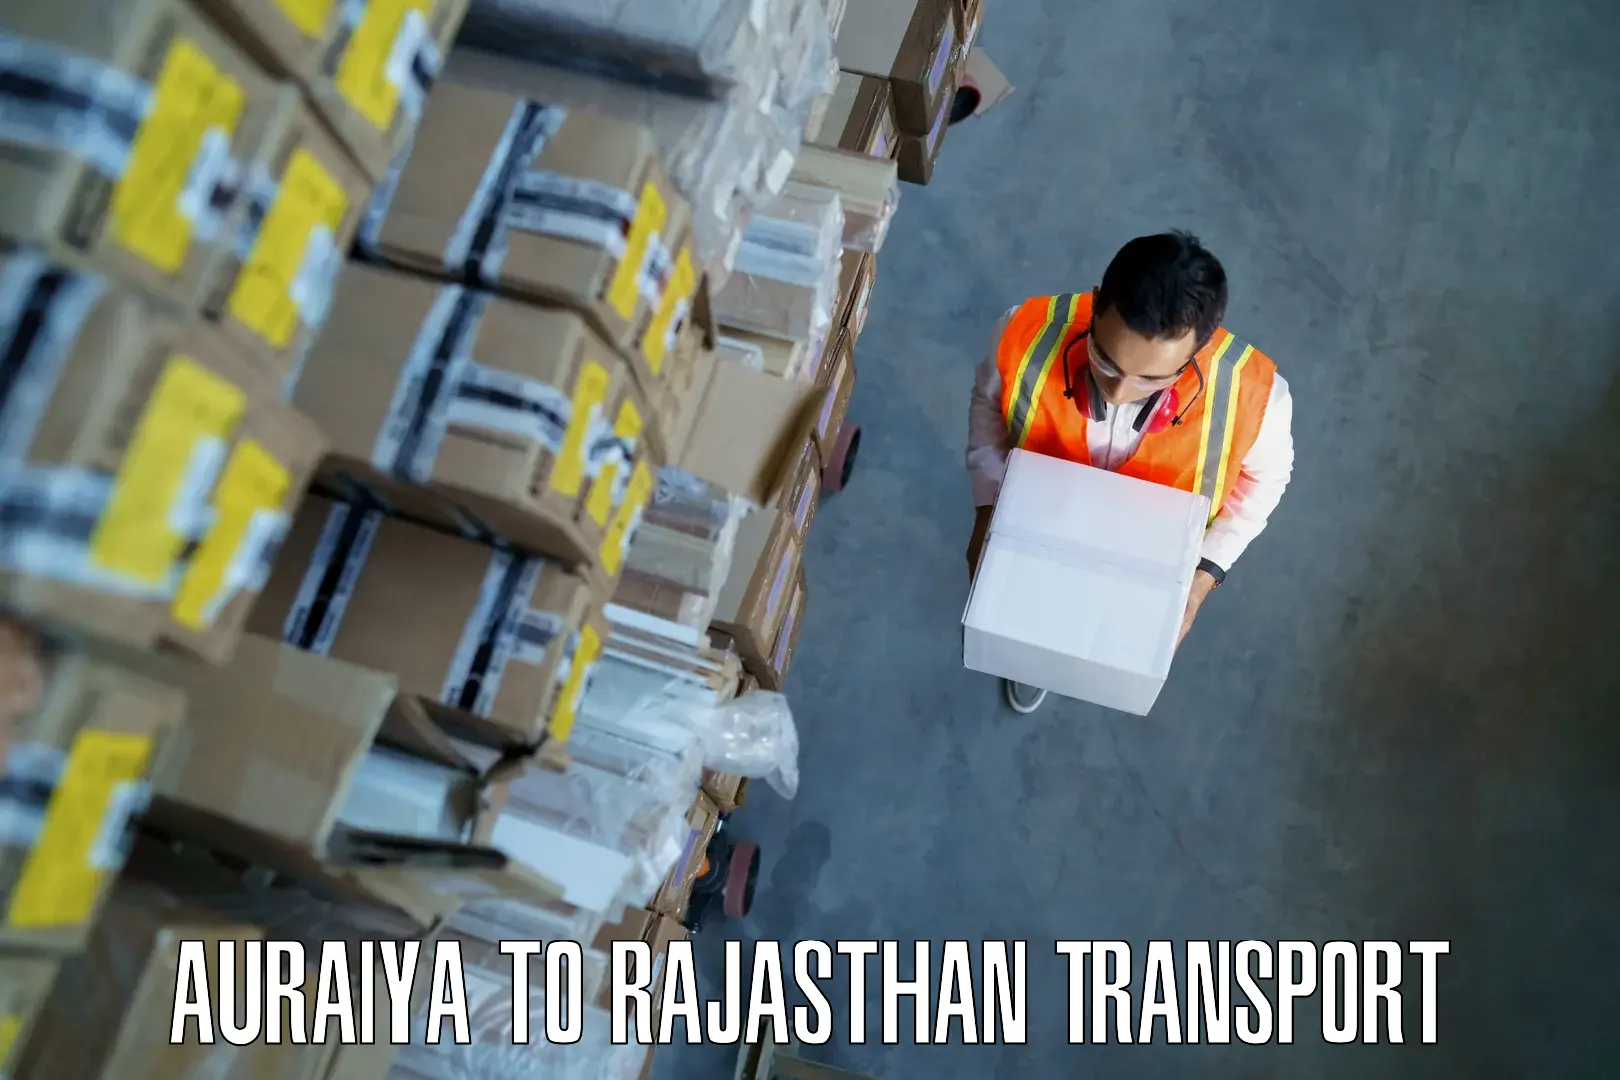 Commercial transport service Auraiya to Parbatsar